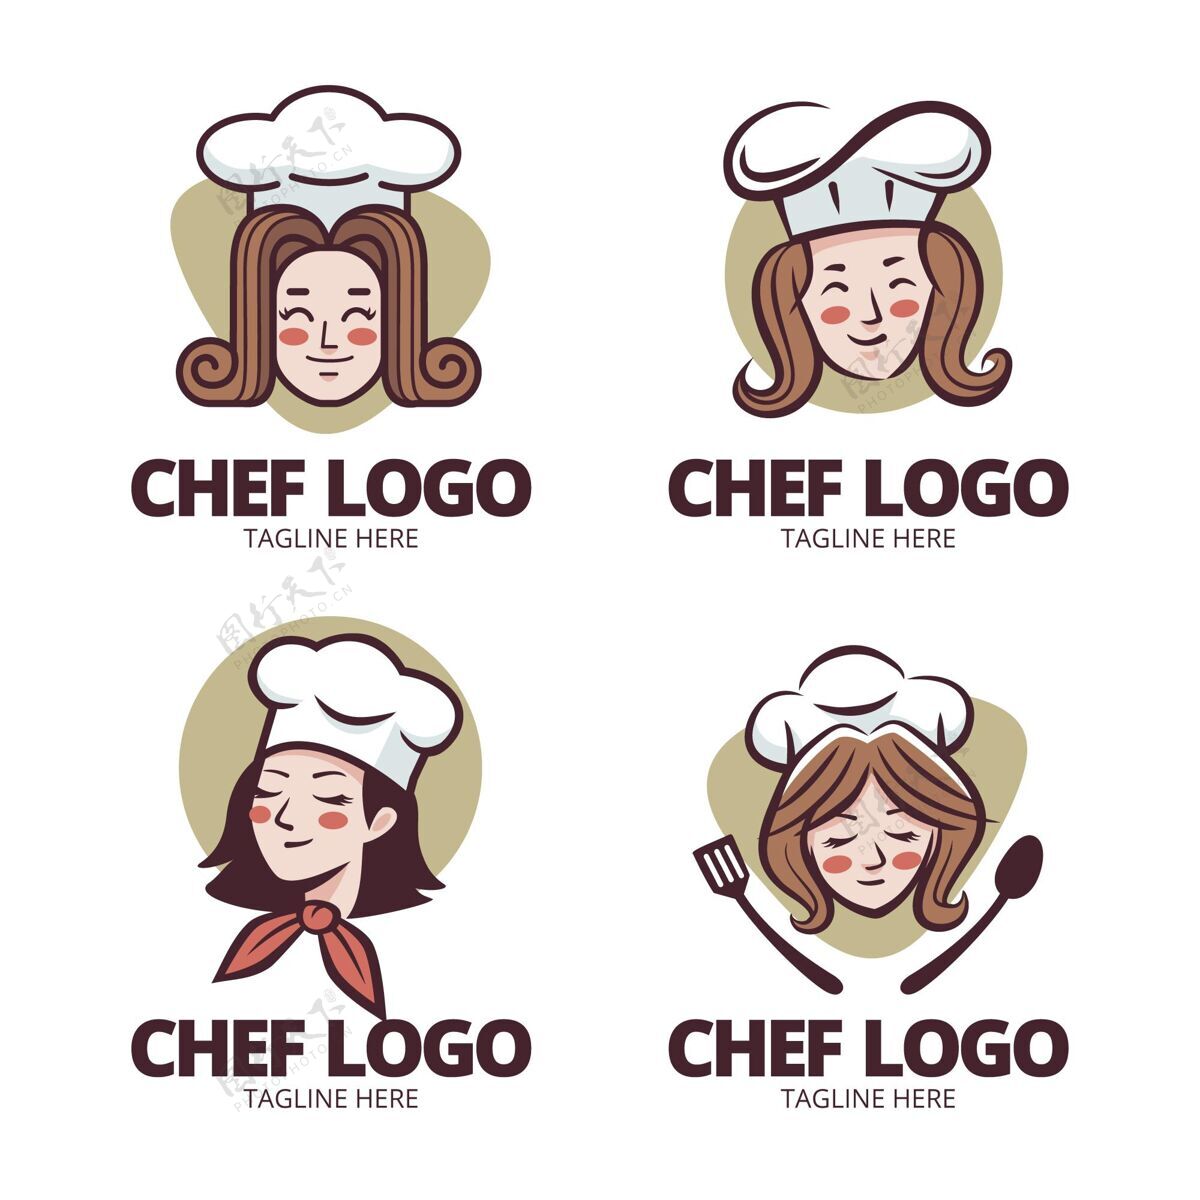 公司标识平面设计女厨师标志系列品牌标识模板厨师标识